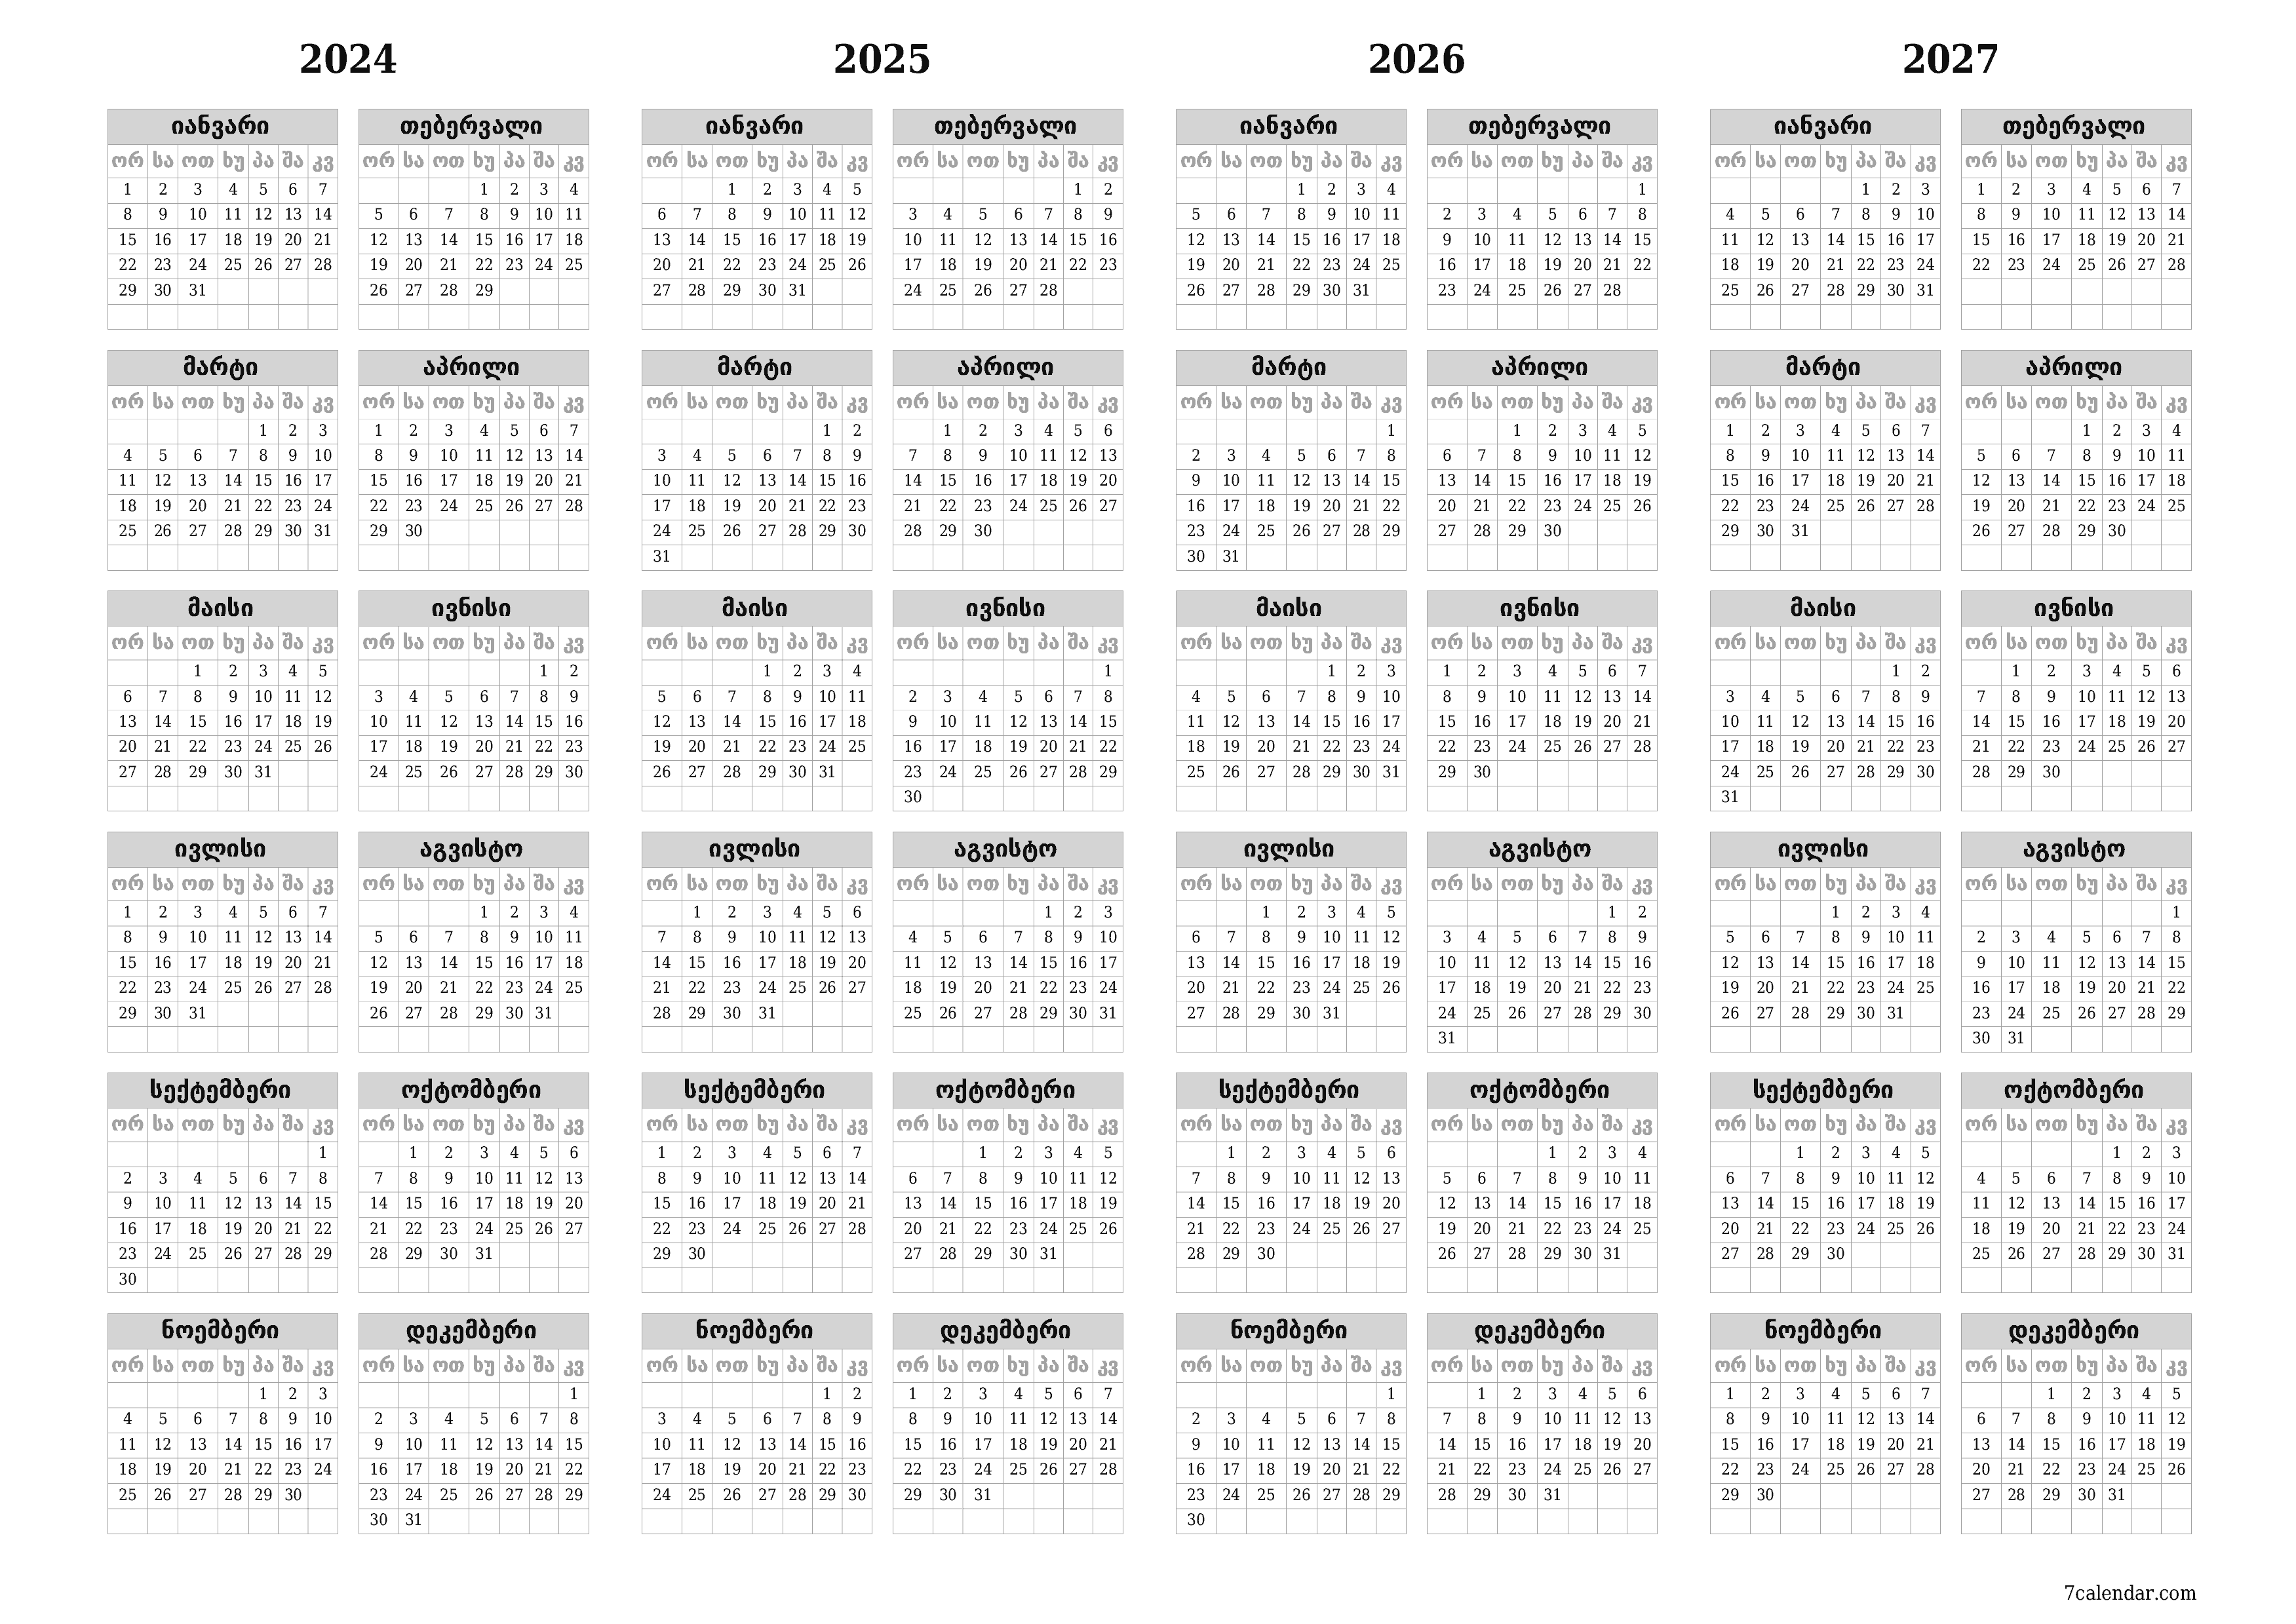 დასაბეჭდი კედლის კალენდრის შაბლონი უფასო ჰორიზონტალური ყოველწლიურად კალენდარი დეკემბერი (დეკ) 2024